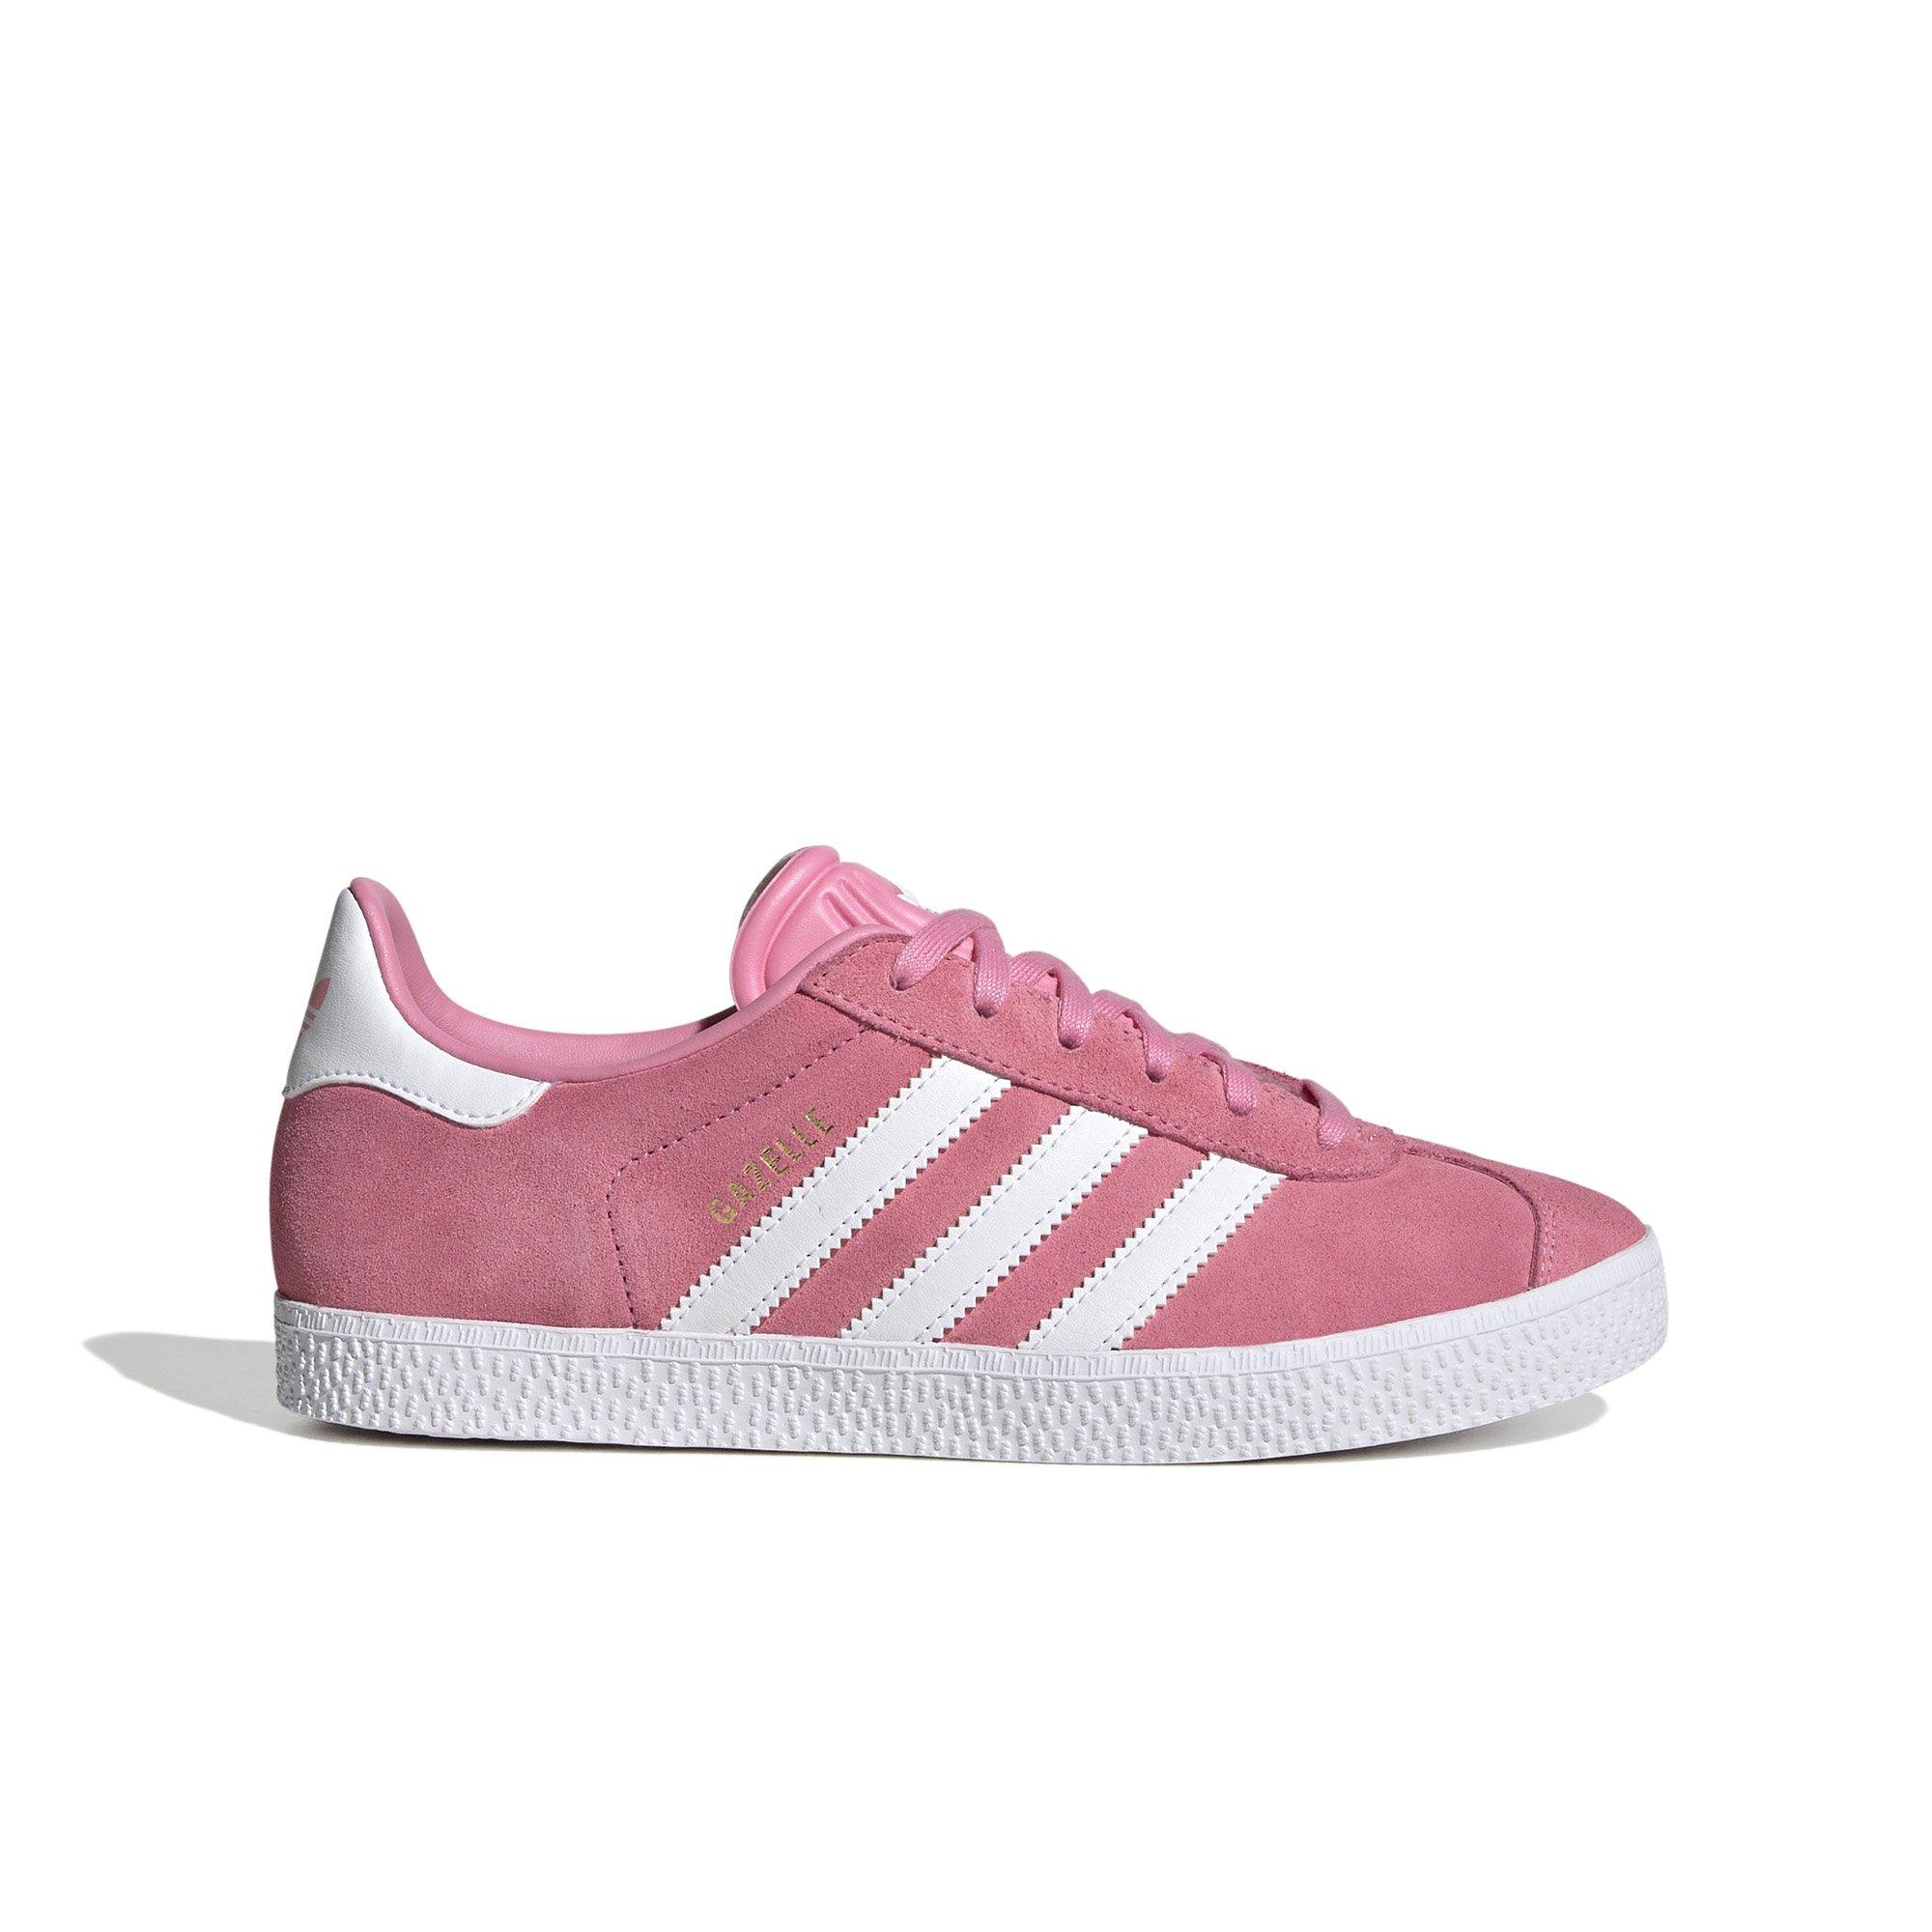 adidas gazelle white pink